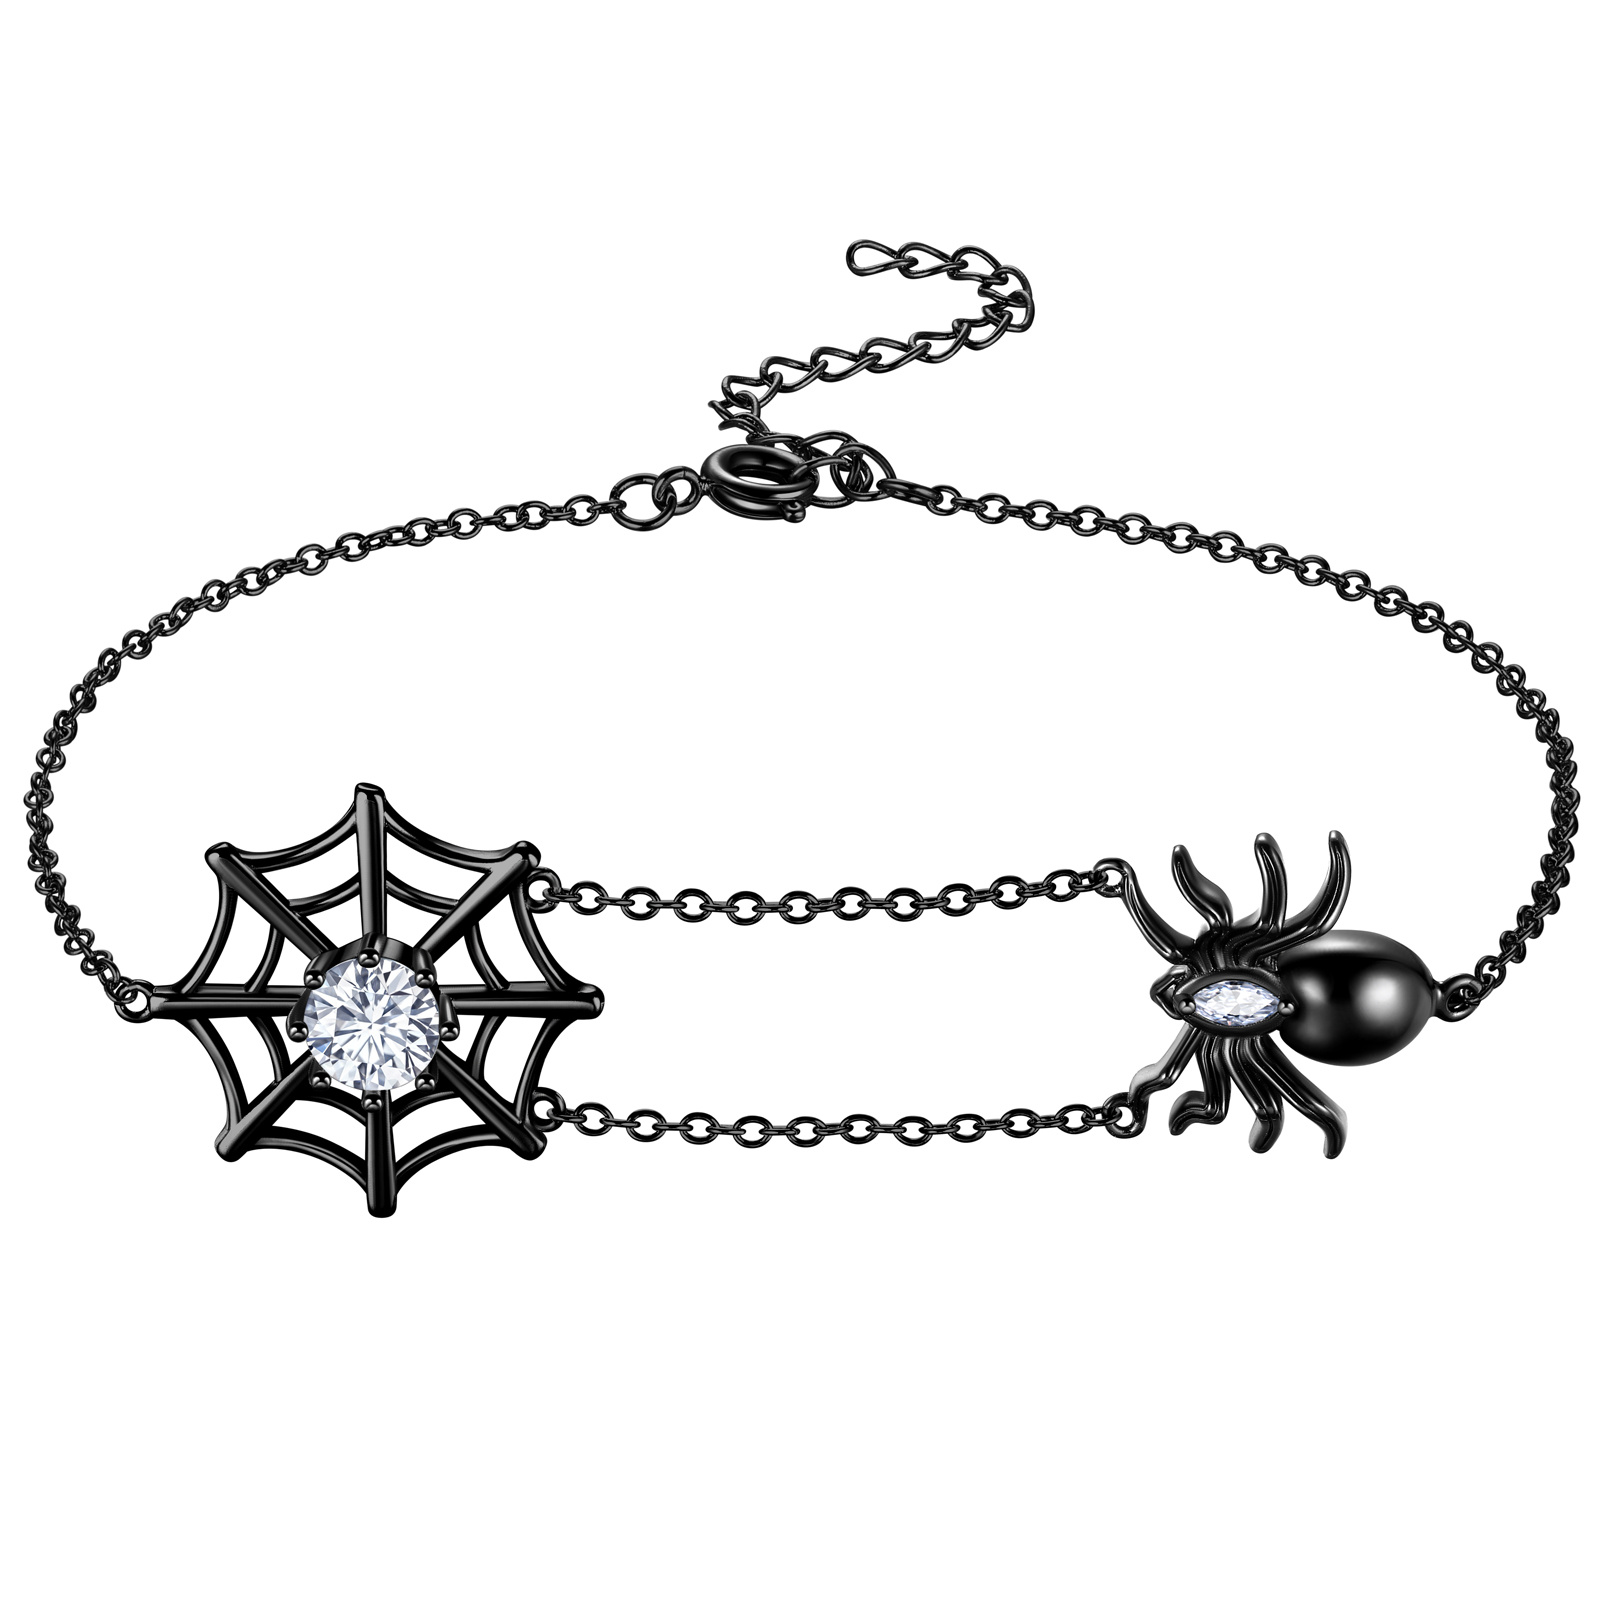 Spider Charm Bracelet, Gothic Charm Bracelet, Wiccan Bracelet, Hematite  Beads, Tarantula, Wicca, Witch, Goth Bracelet, Spider Charms, Black